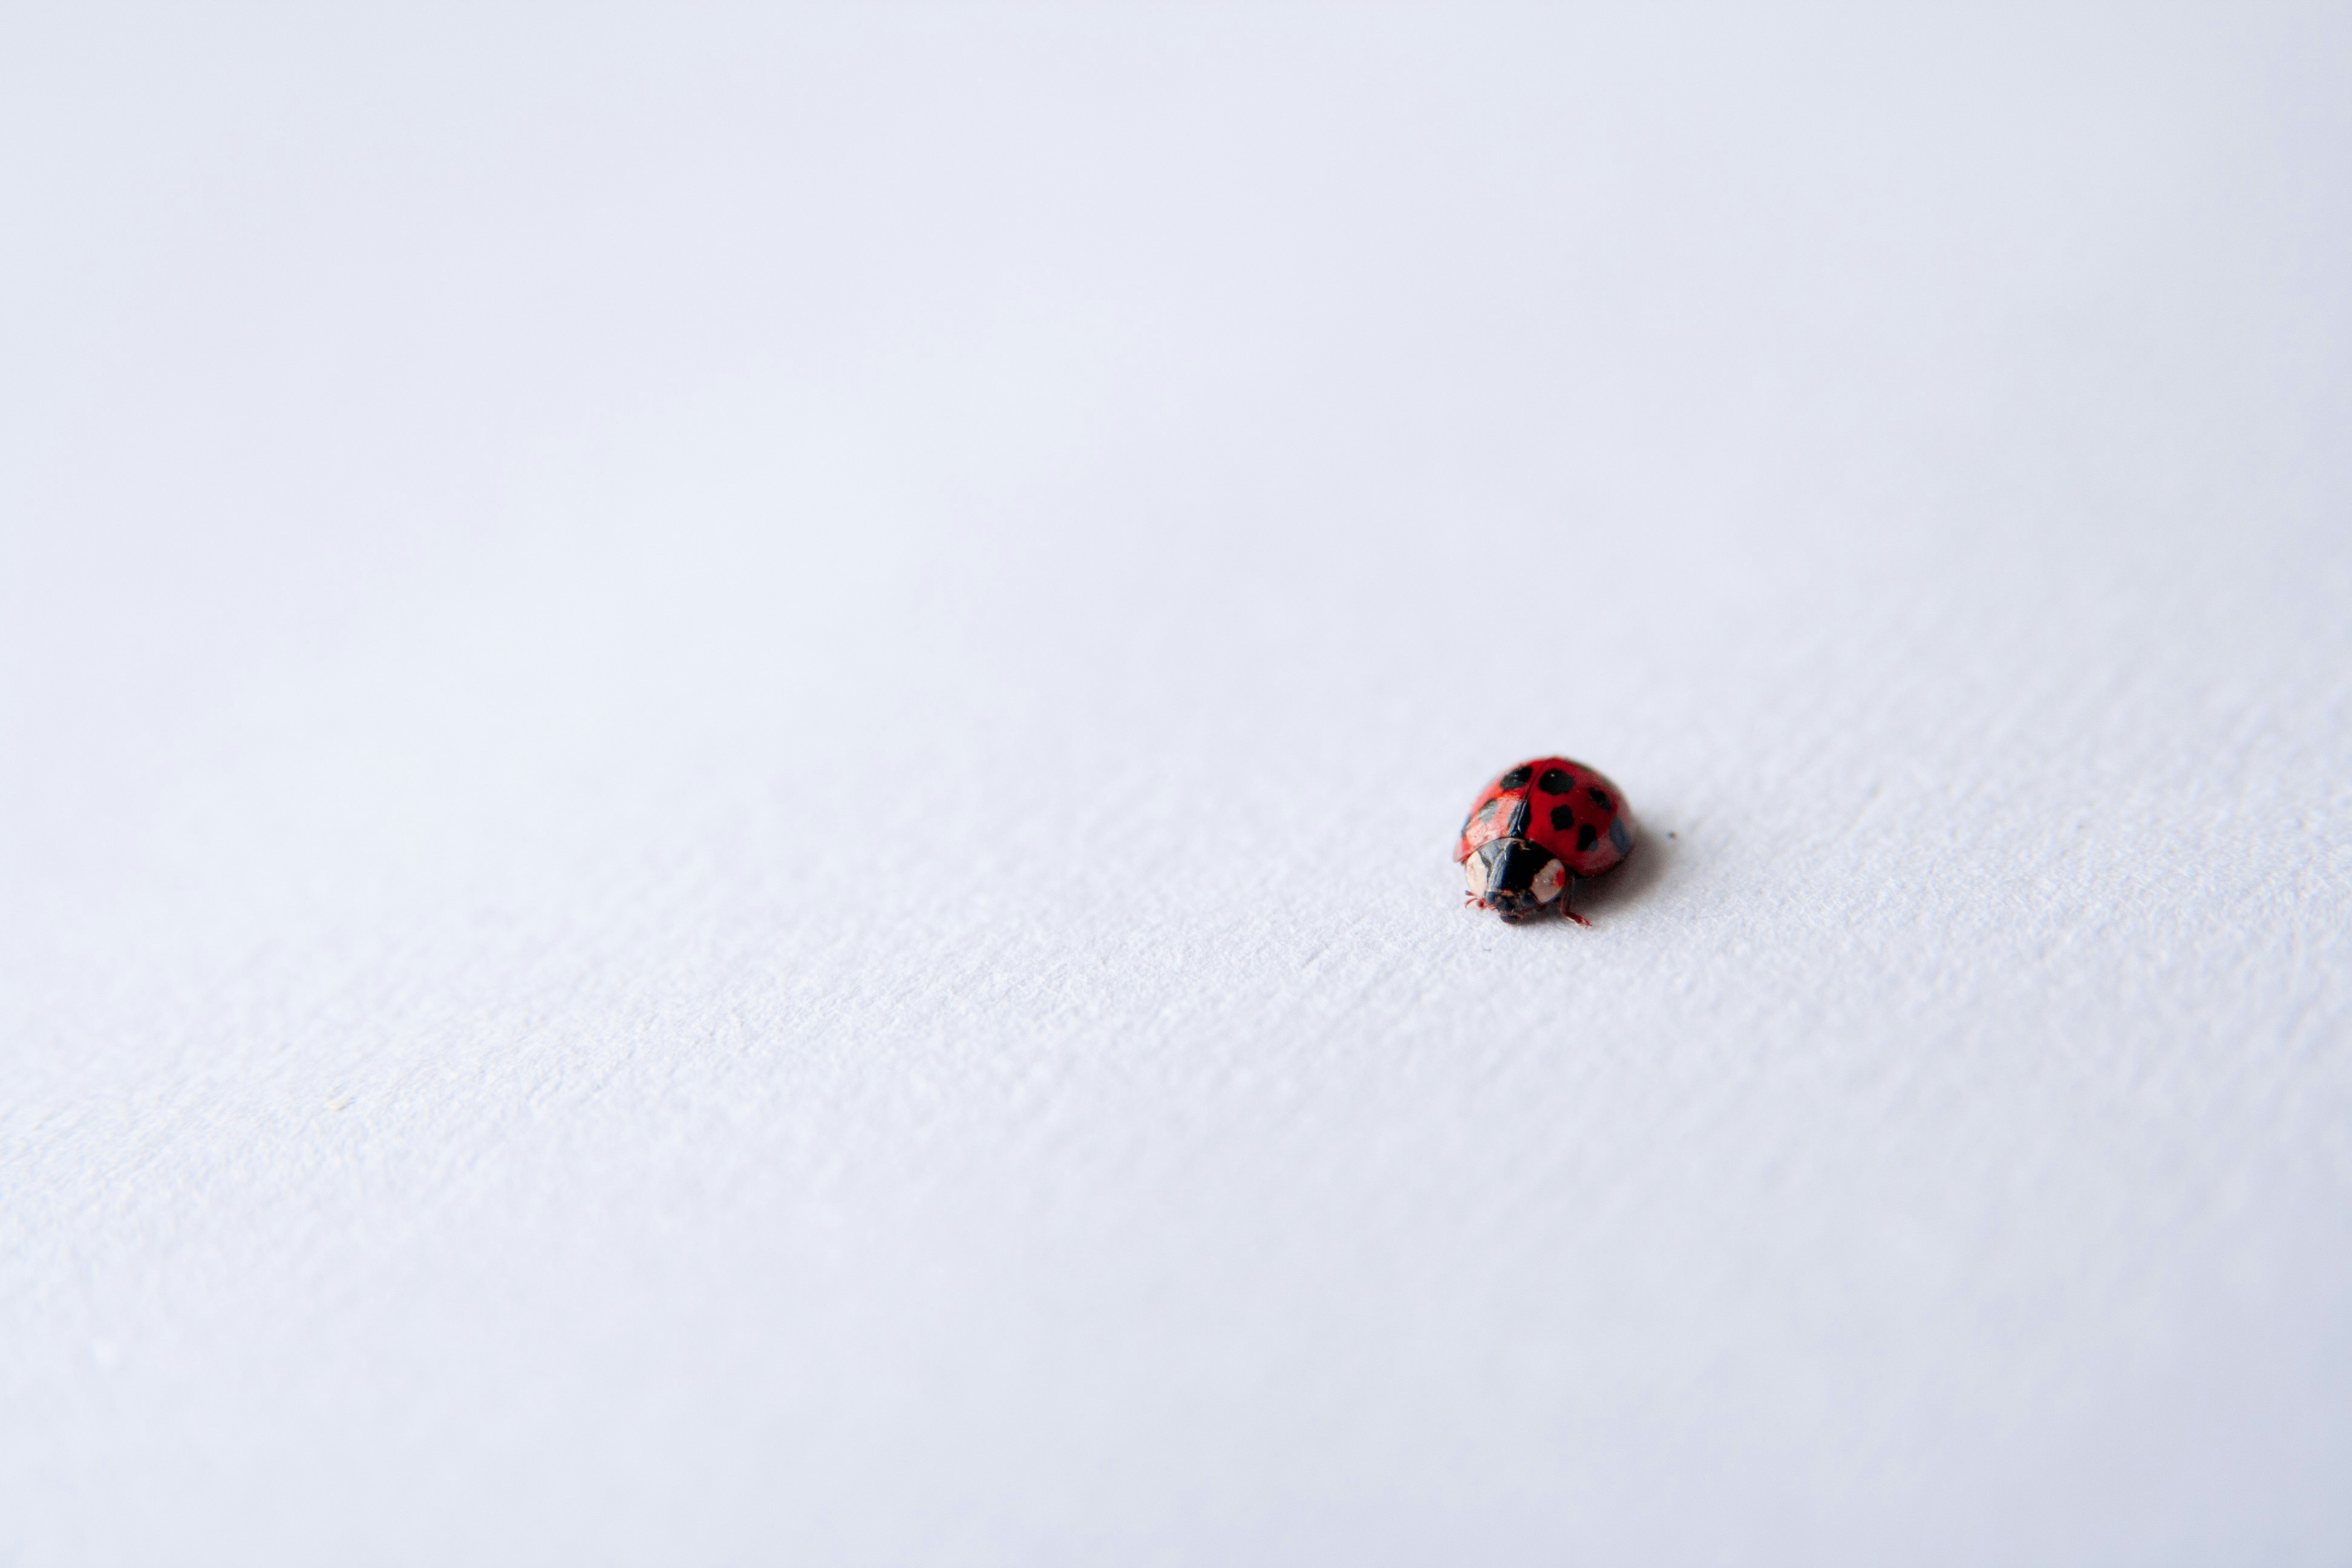 Ladybug on white